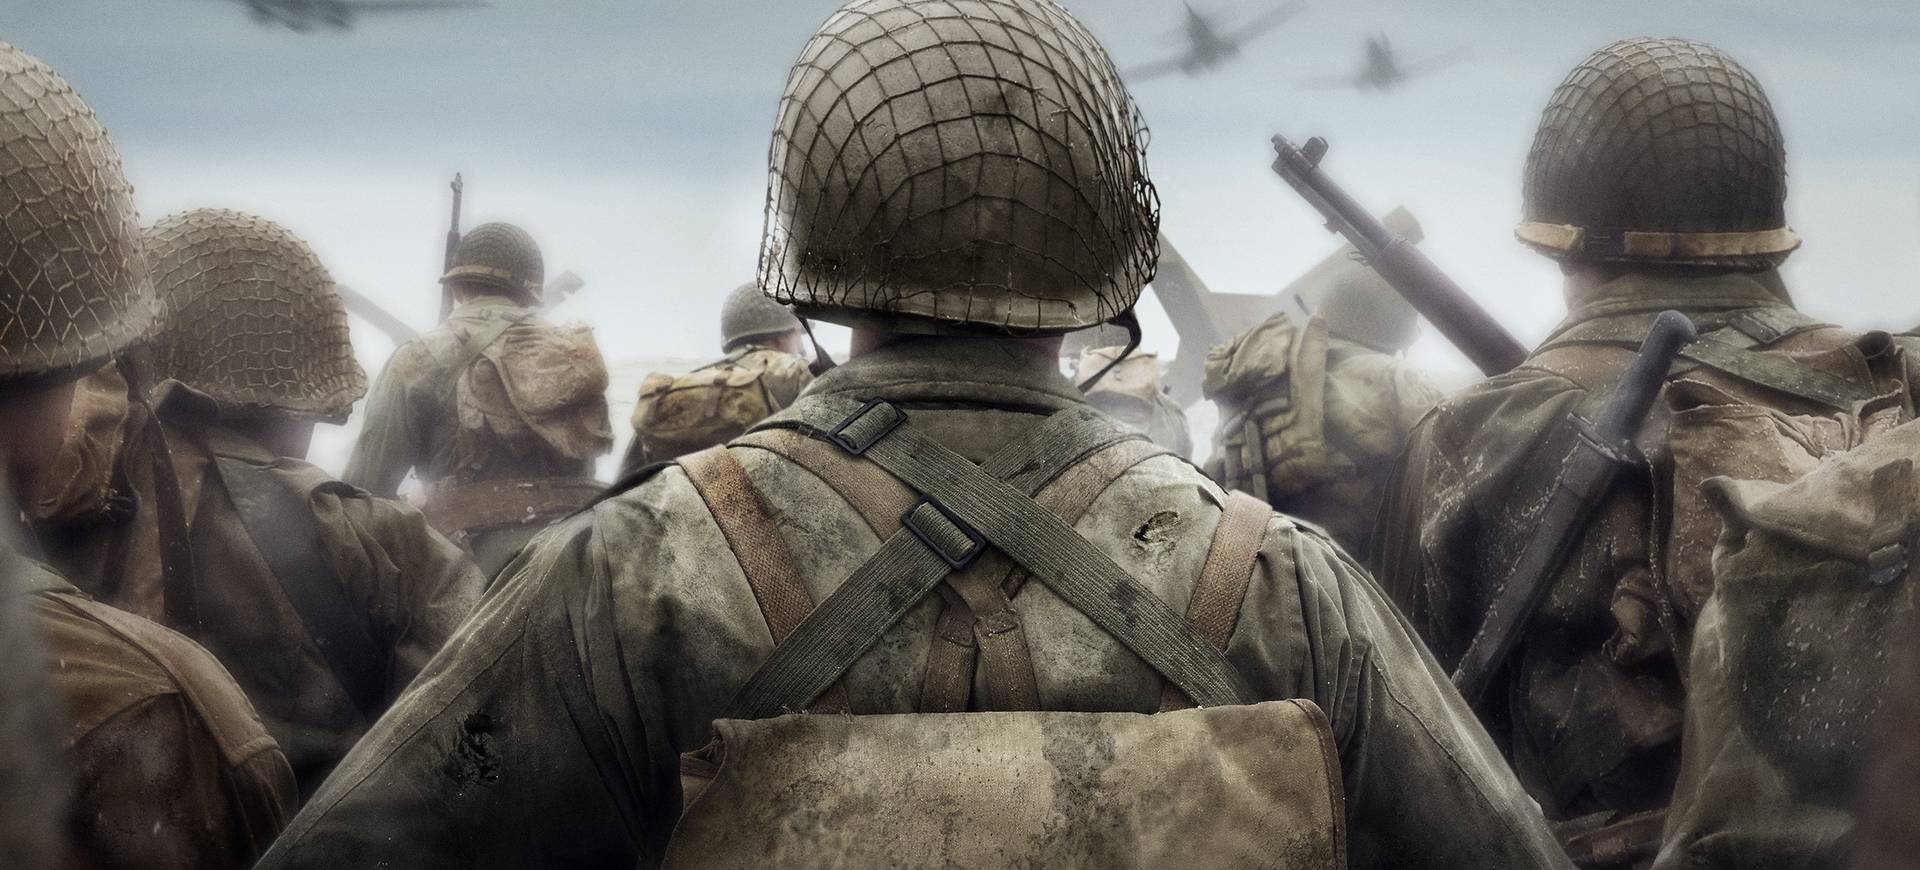 Call of Duty: WWII và hiện thực tàn khốc của chiến tranh - Giới Thiệu Game